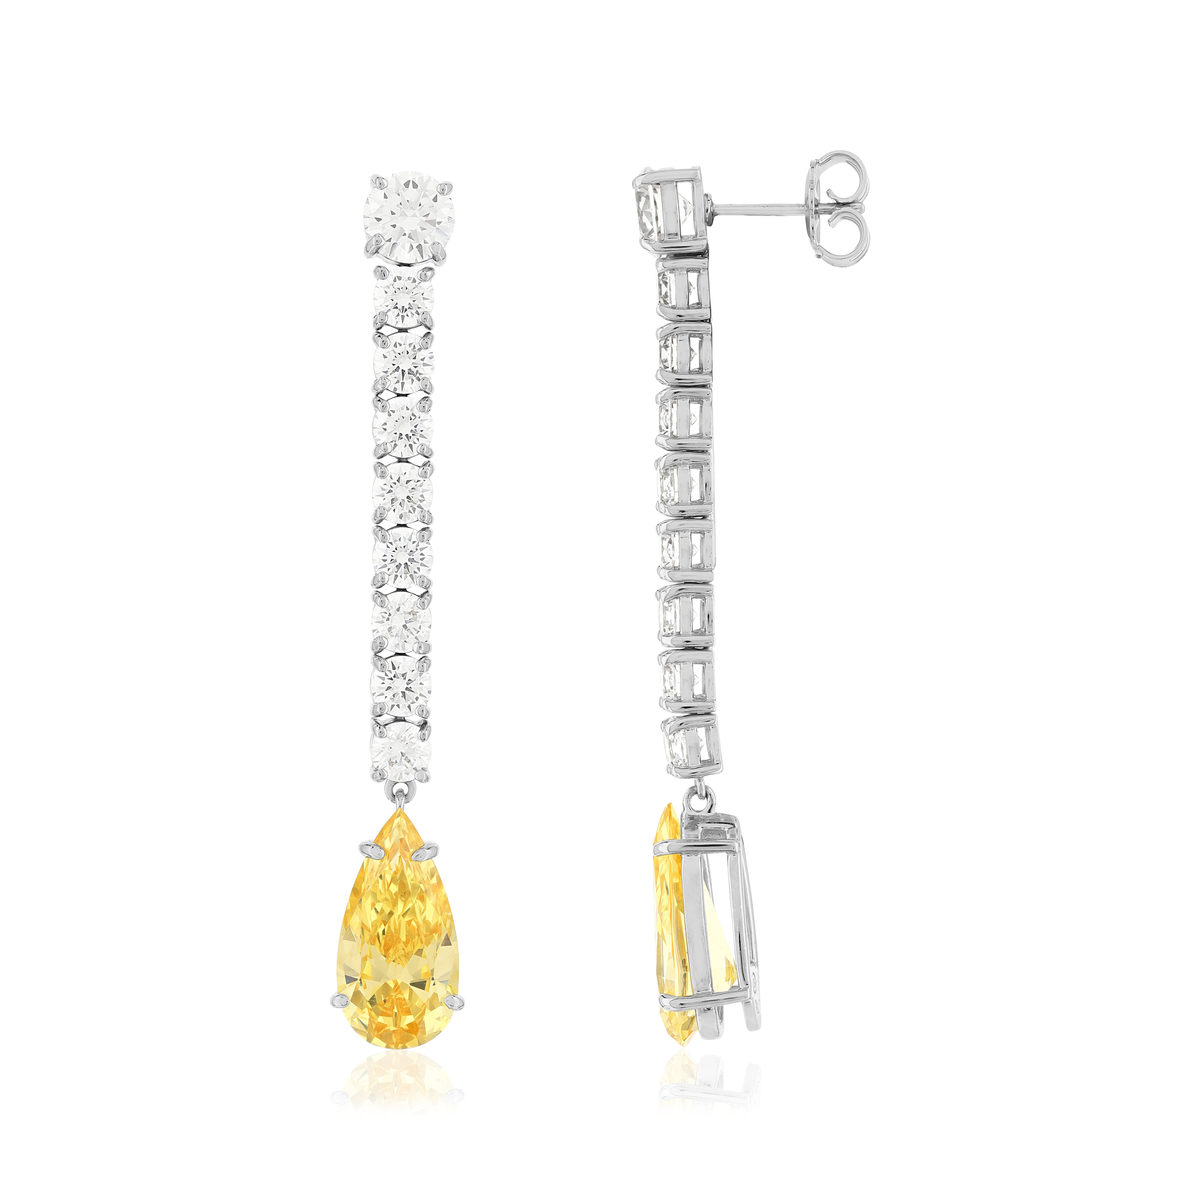 Boucles d'oreilles pendants argent 925 zirconias jaunes et blancs. - vue 2